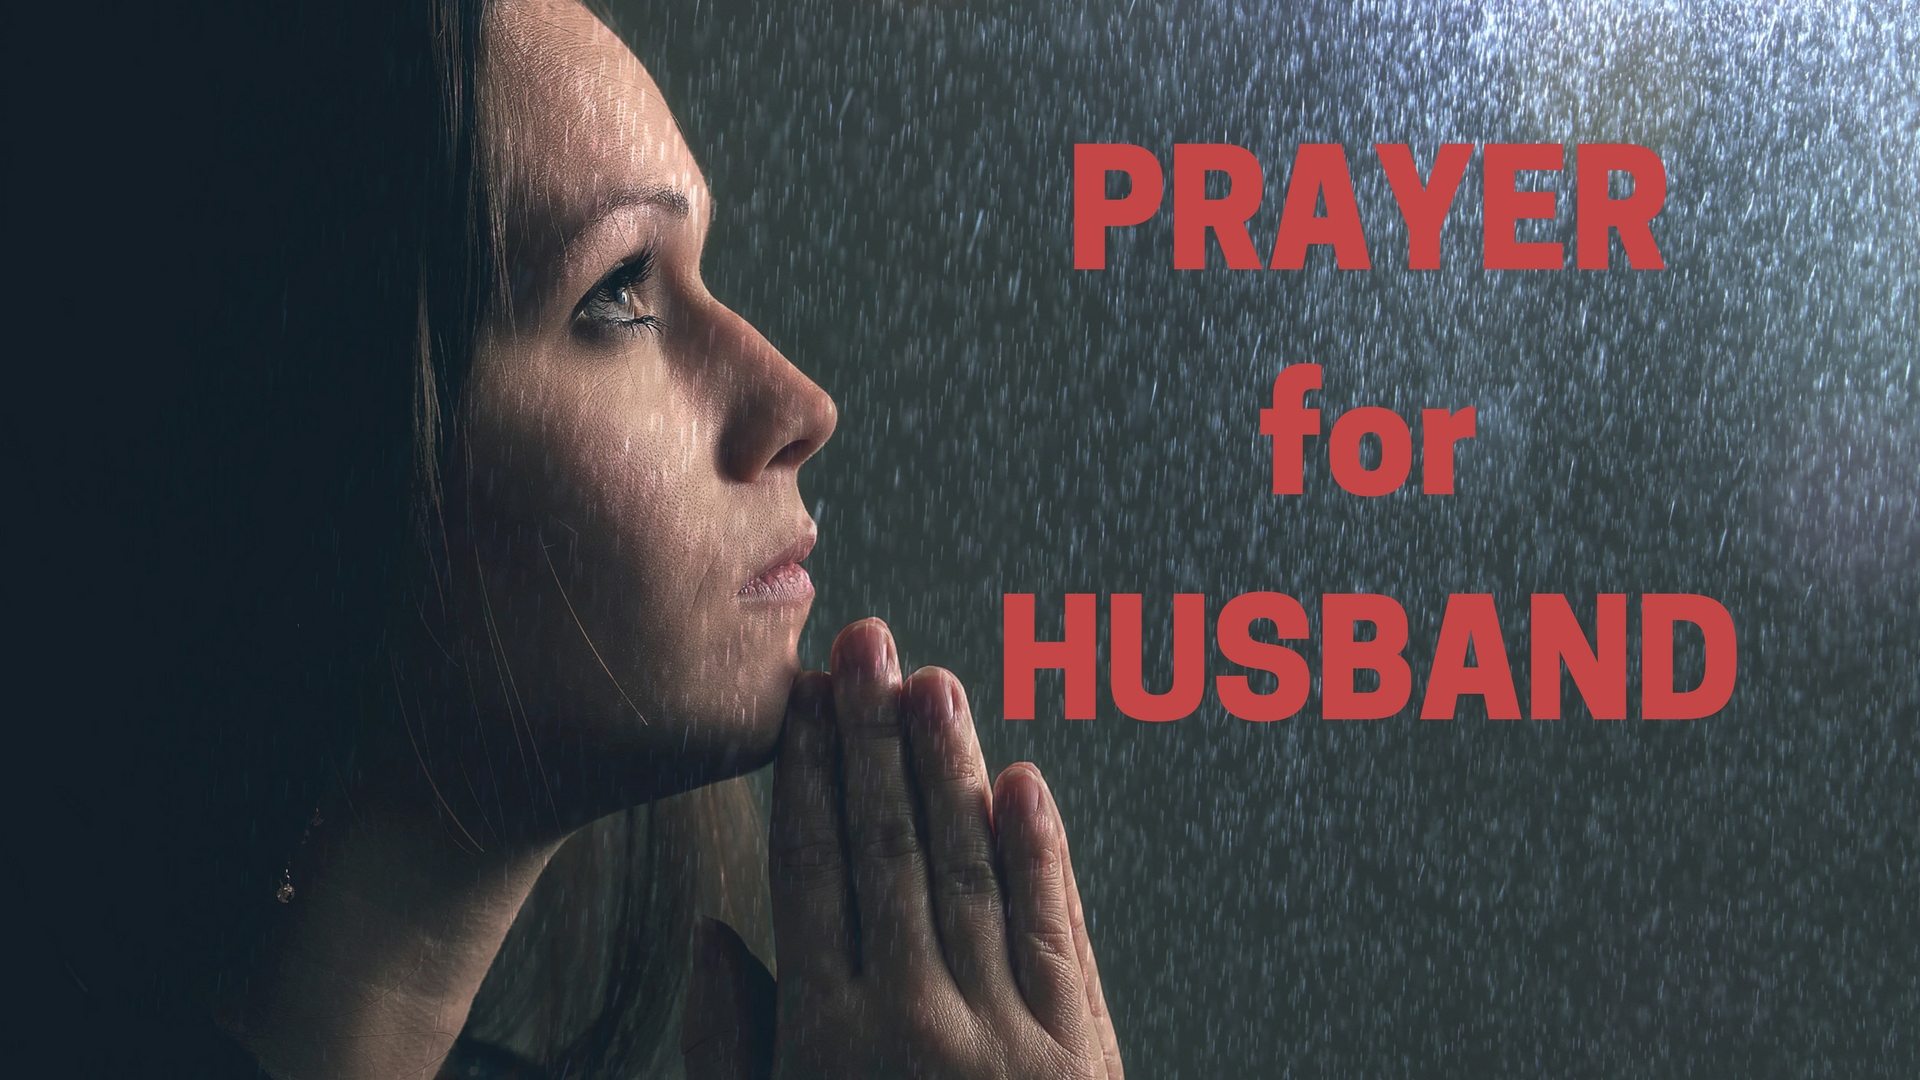 PRAYER for HUSBAND - Adobe stock